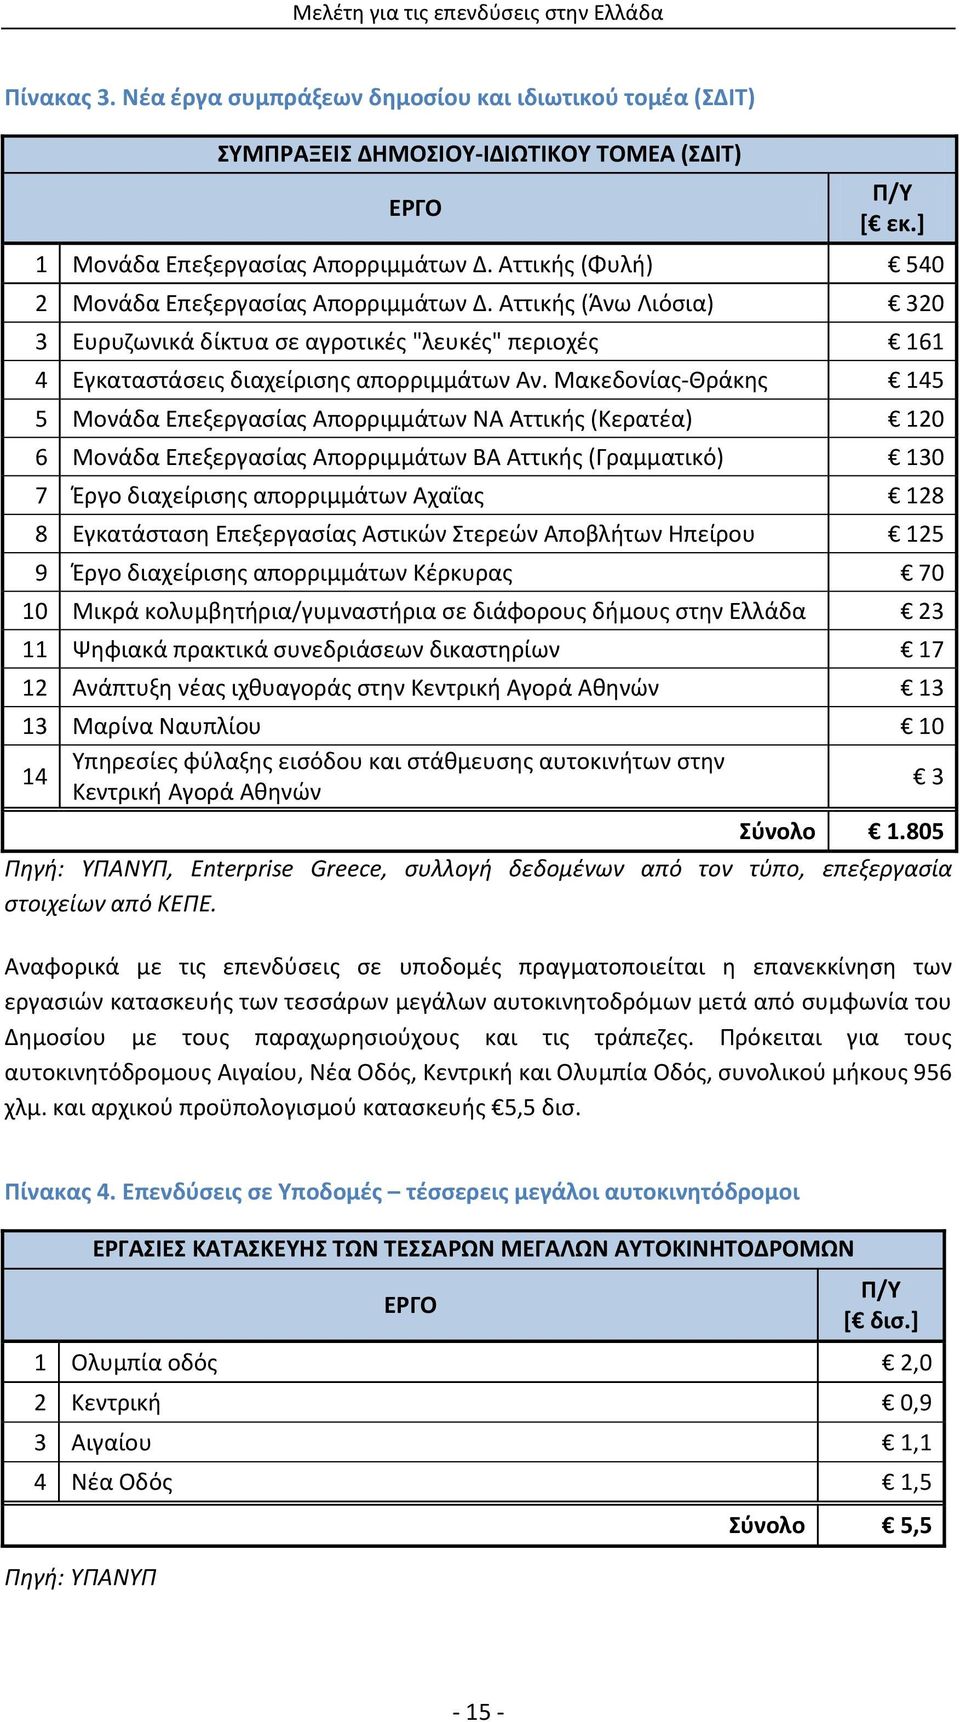 Μακεδονίας-Θράκης 145 5 Μονάδα Επεξεργασίας Απορριμμάτων ΝΑ Αττικής (Κερατέα) 120 6 Μονάδα Επεξεργασίας Απορριμμάτων ΒΑ Αττικής (Γραμματικό) 130 7 Έργο διαχείρισης απορριμμάτων Αχαΐας 128 8